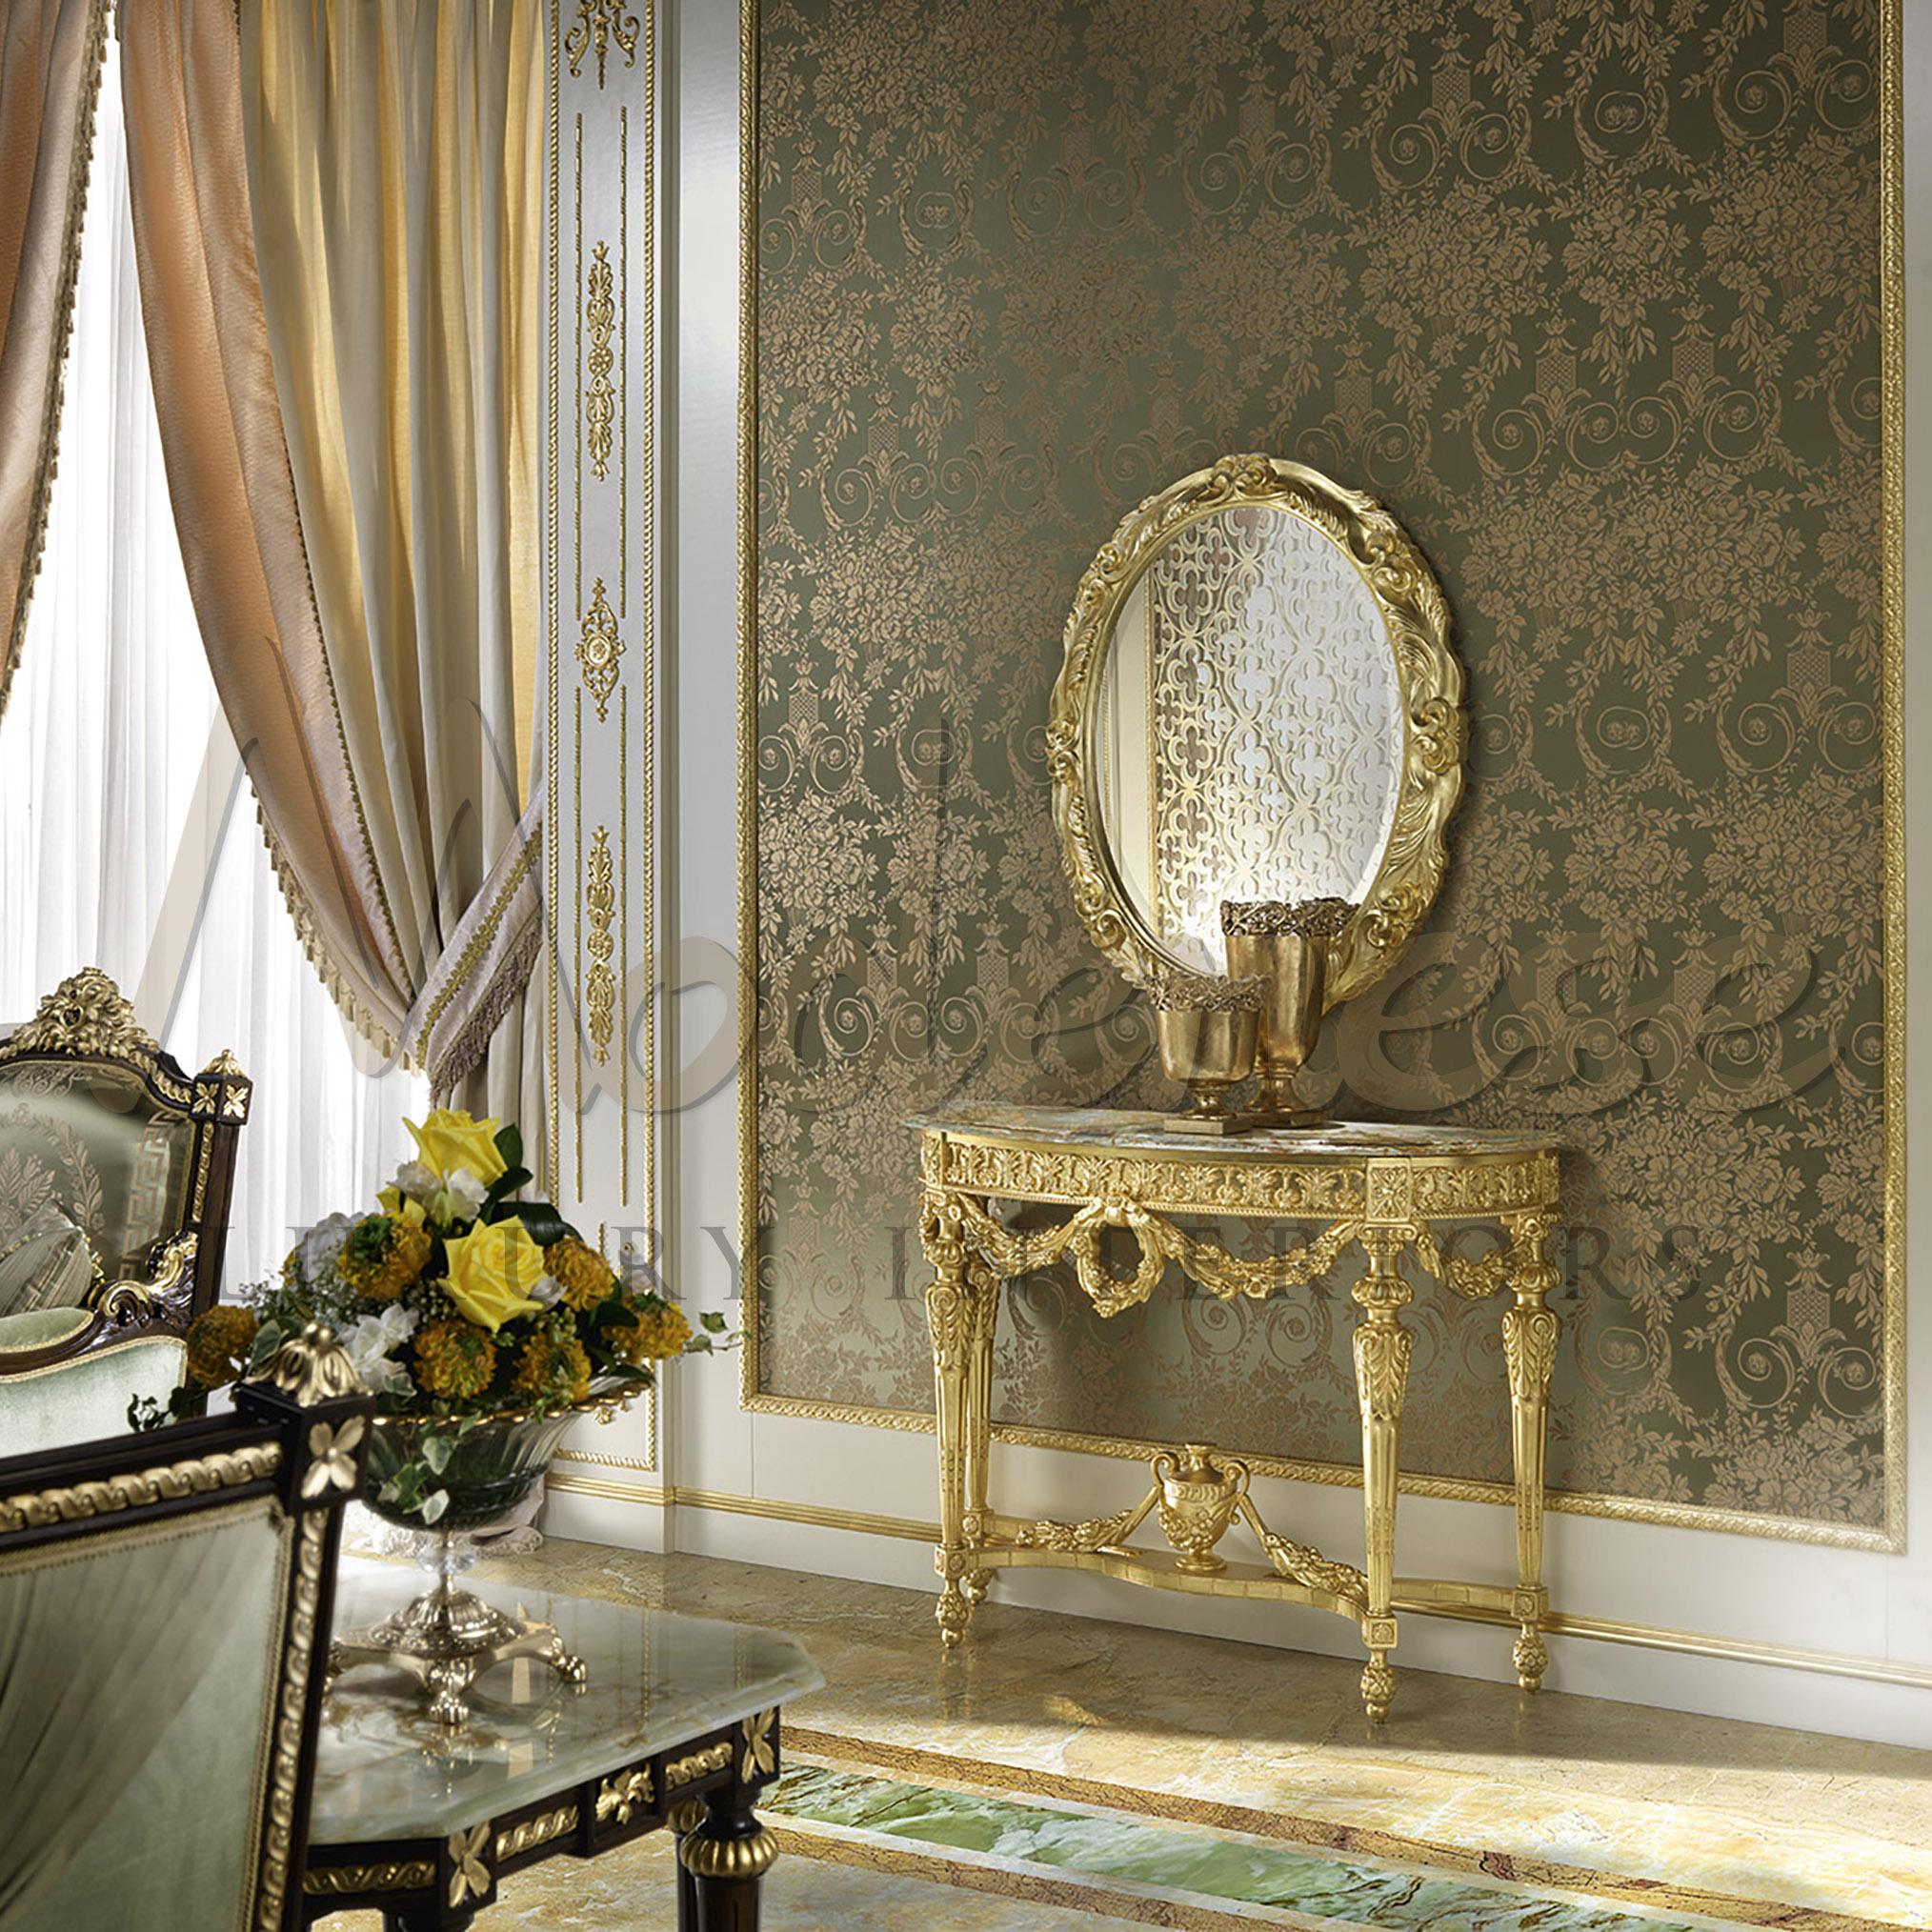 Console classique somptueuse de Modenese Luxury Interiors. Embellissez vos pièces sociales avec ce meuble haut de gamme, qui doit la plupart de son élégance aux mains habiles des artisans et décorateurs modénais. La surface supérieure présente ici